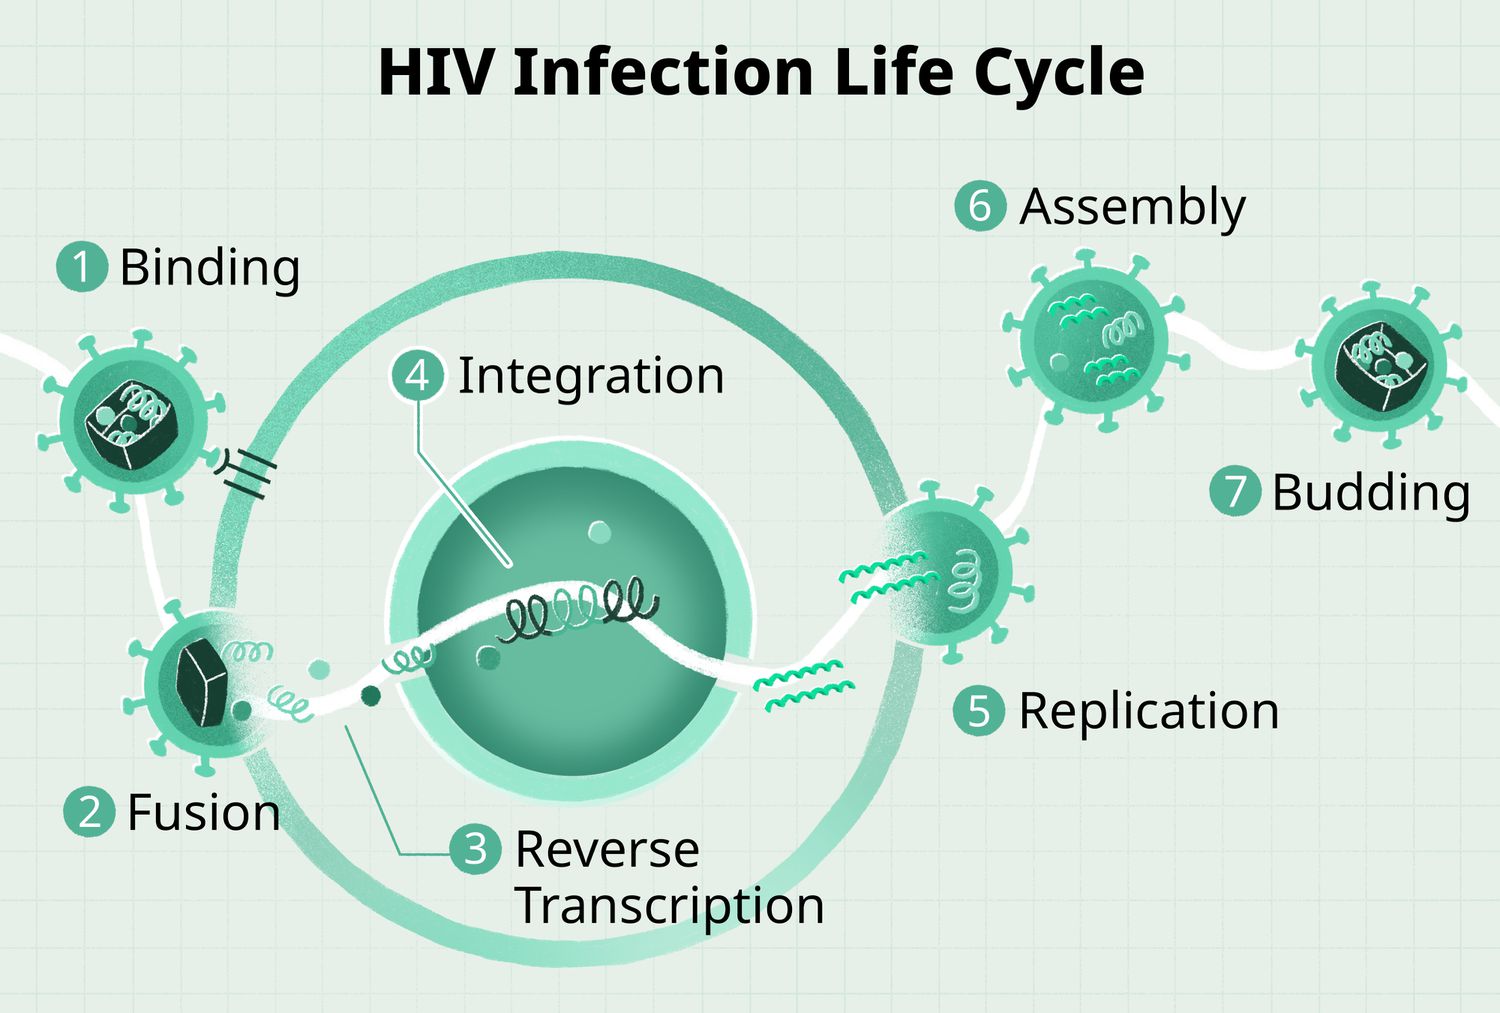 Έρευνα για την HIV λοίμωξη σε χώρους παροχής υπηρεσιών υγείας